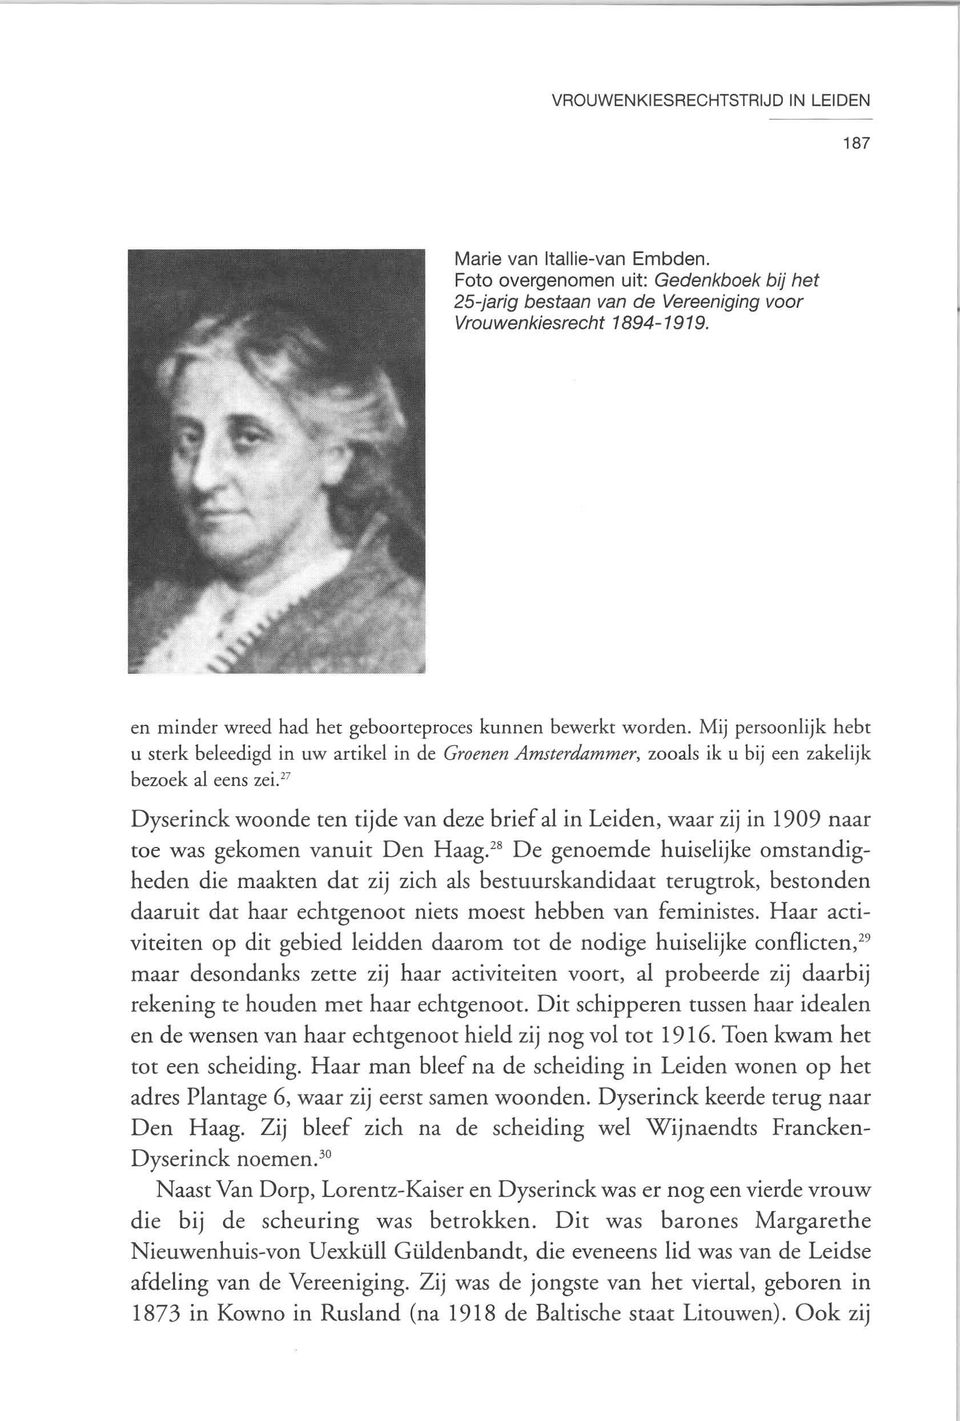 " Dyserinck woonde ten tijde van deze briefal in Leiden, waar zij in 1909 naar toe was gekomen vanuit Den Haag.